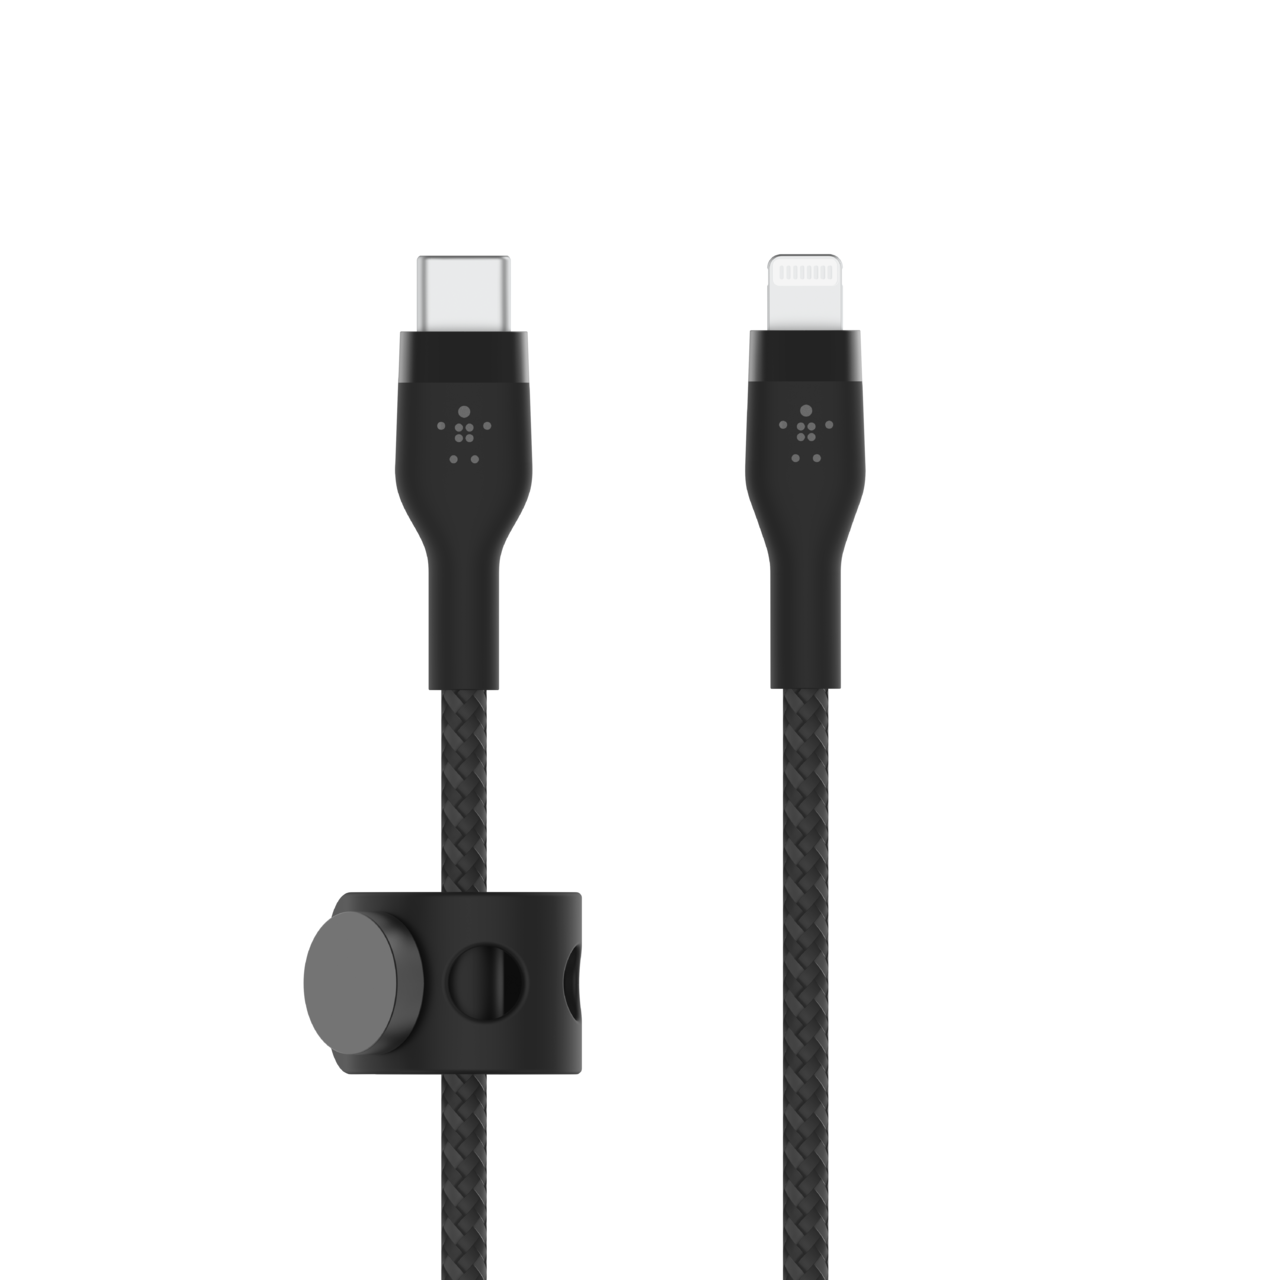 CÂBLE USB / USB C : Quick charge 3.0, résistant